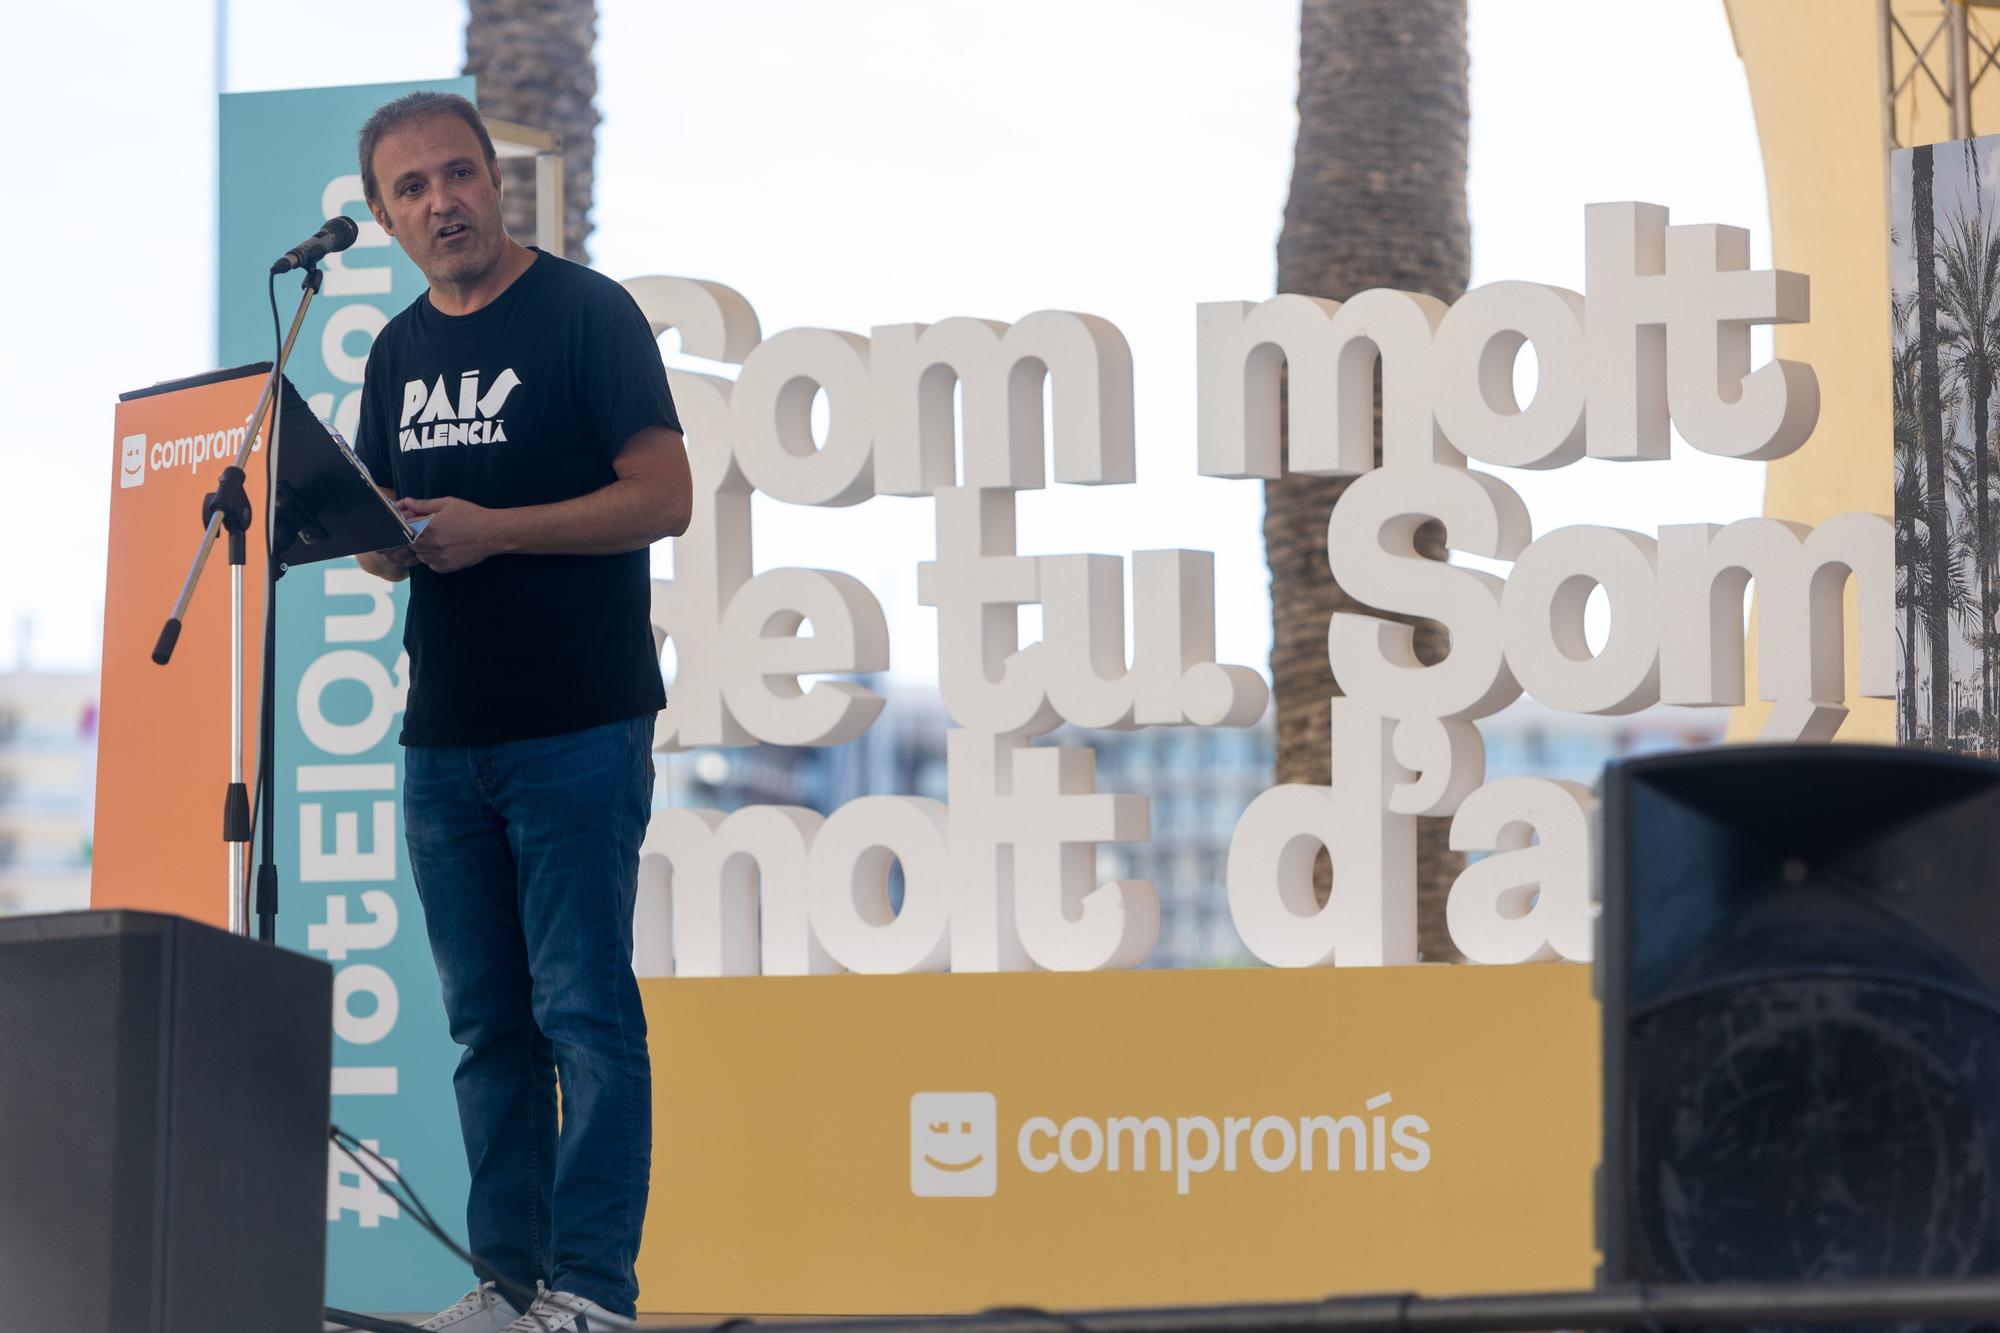 Baldoví quita hierro al plantón de Mas en Alicante: "En el próximo acto estaremos juntos"